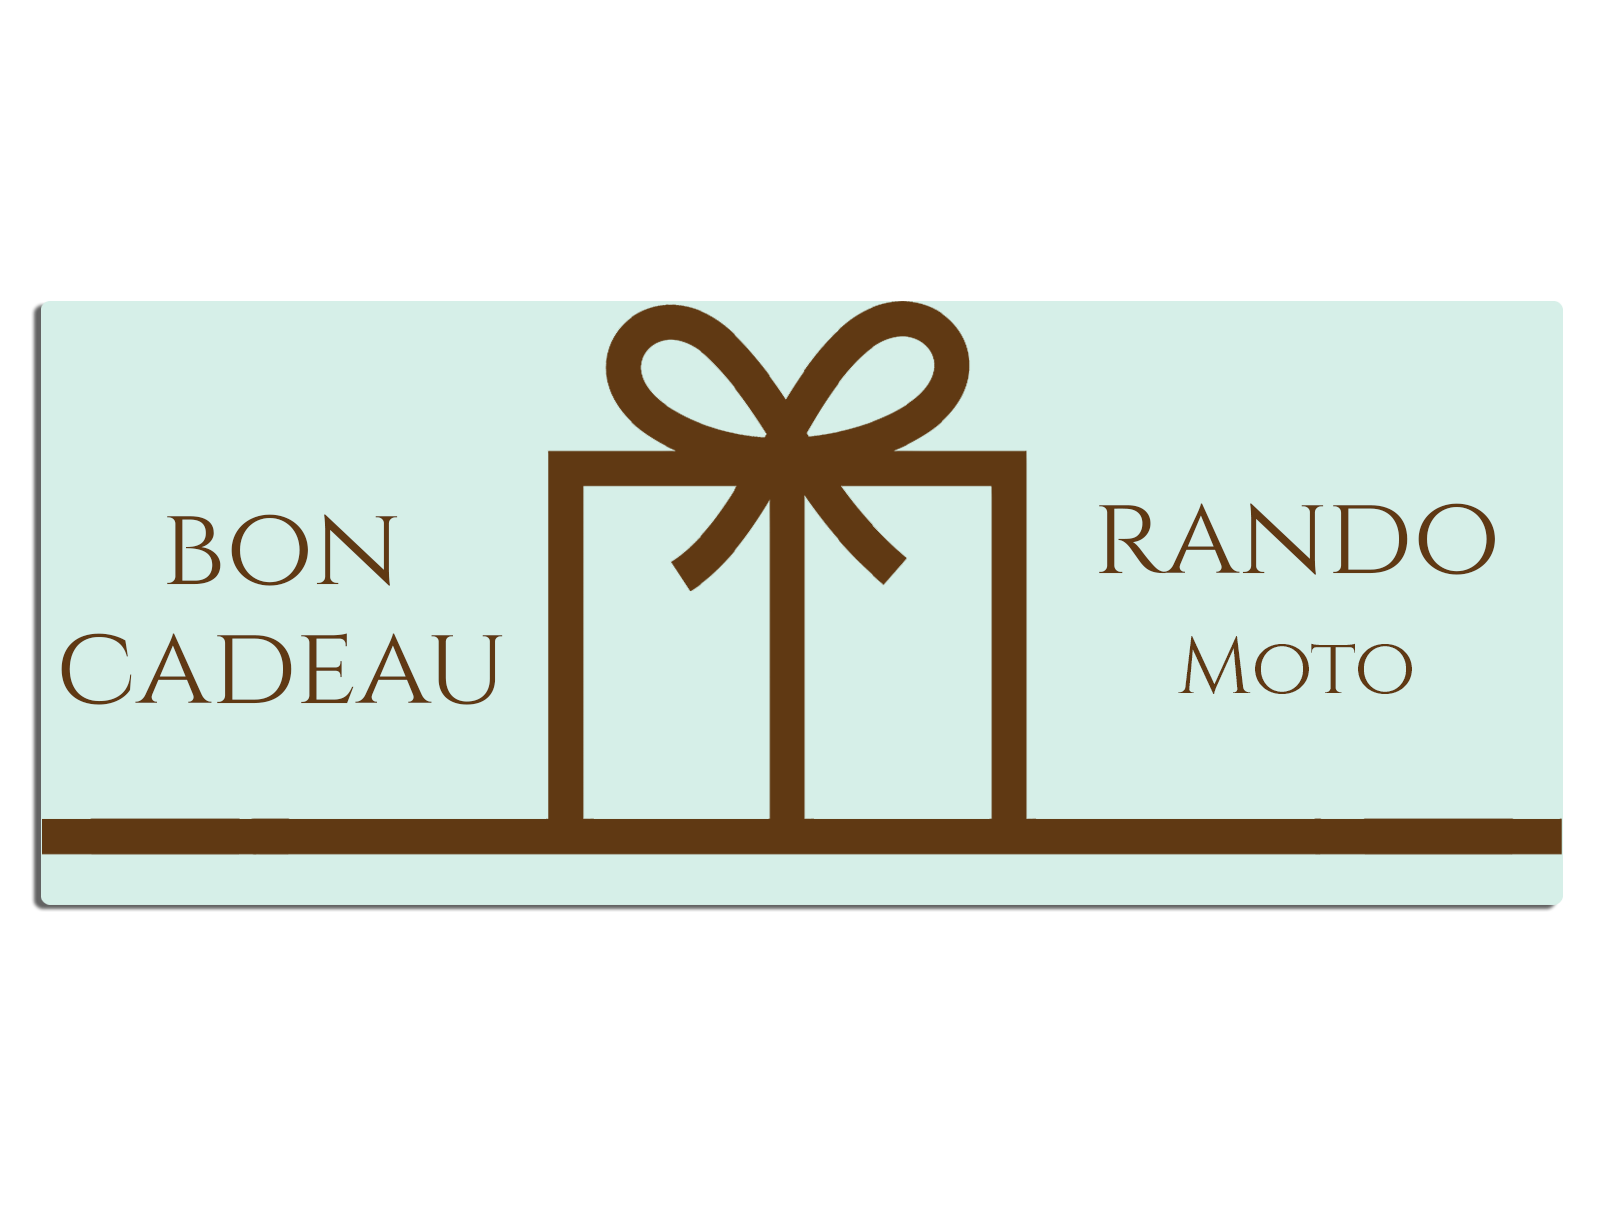 Bon cadeau Moto - RandoMotoBike